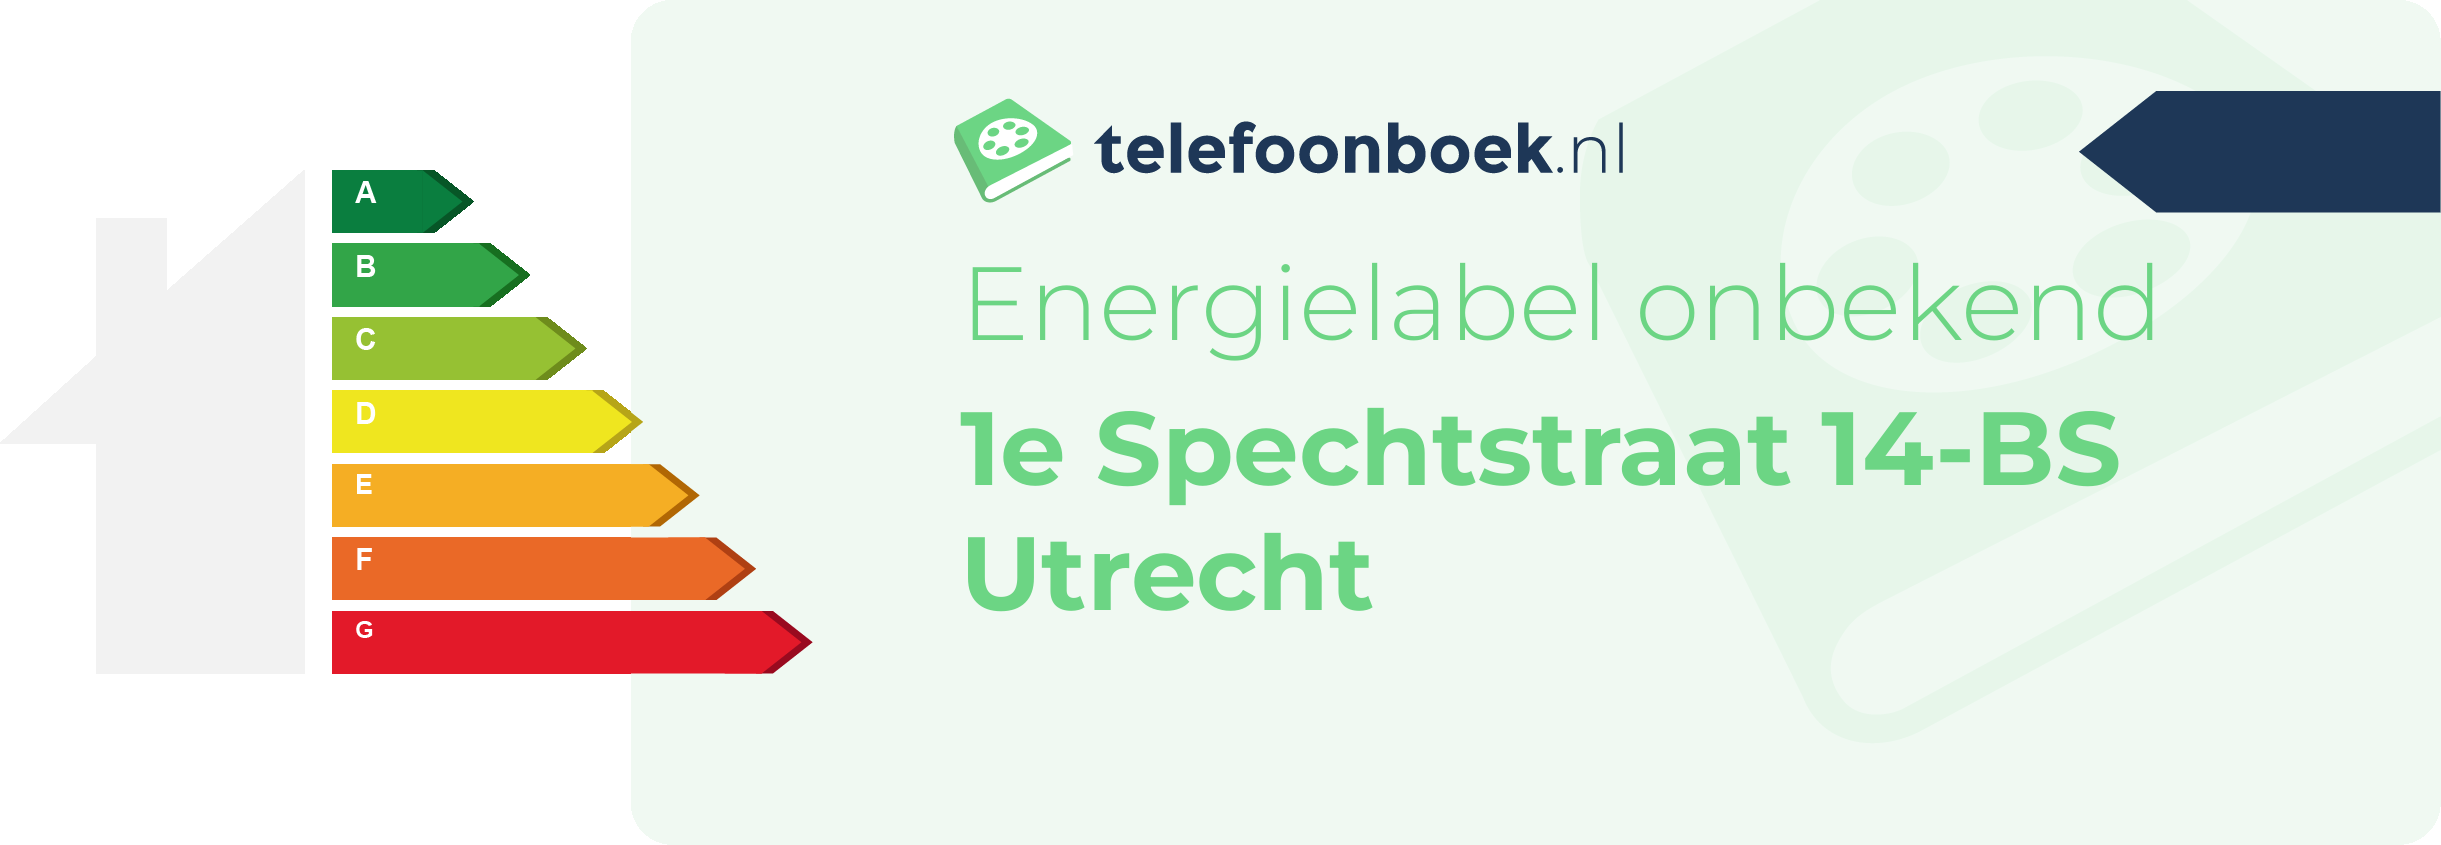 Energielabel 1e Spechtstraat 14-BS Utrecht